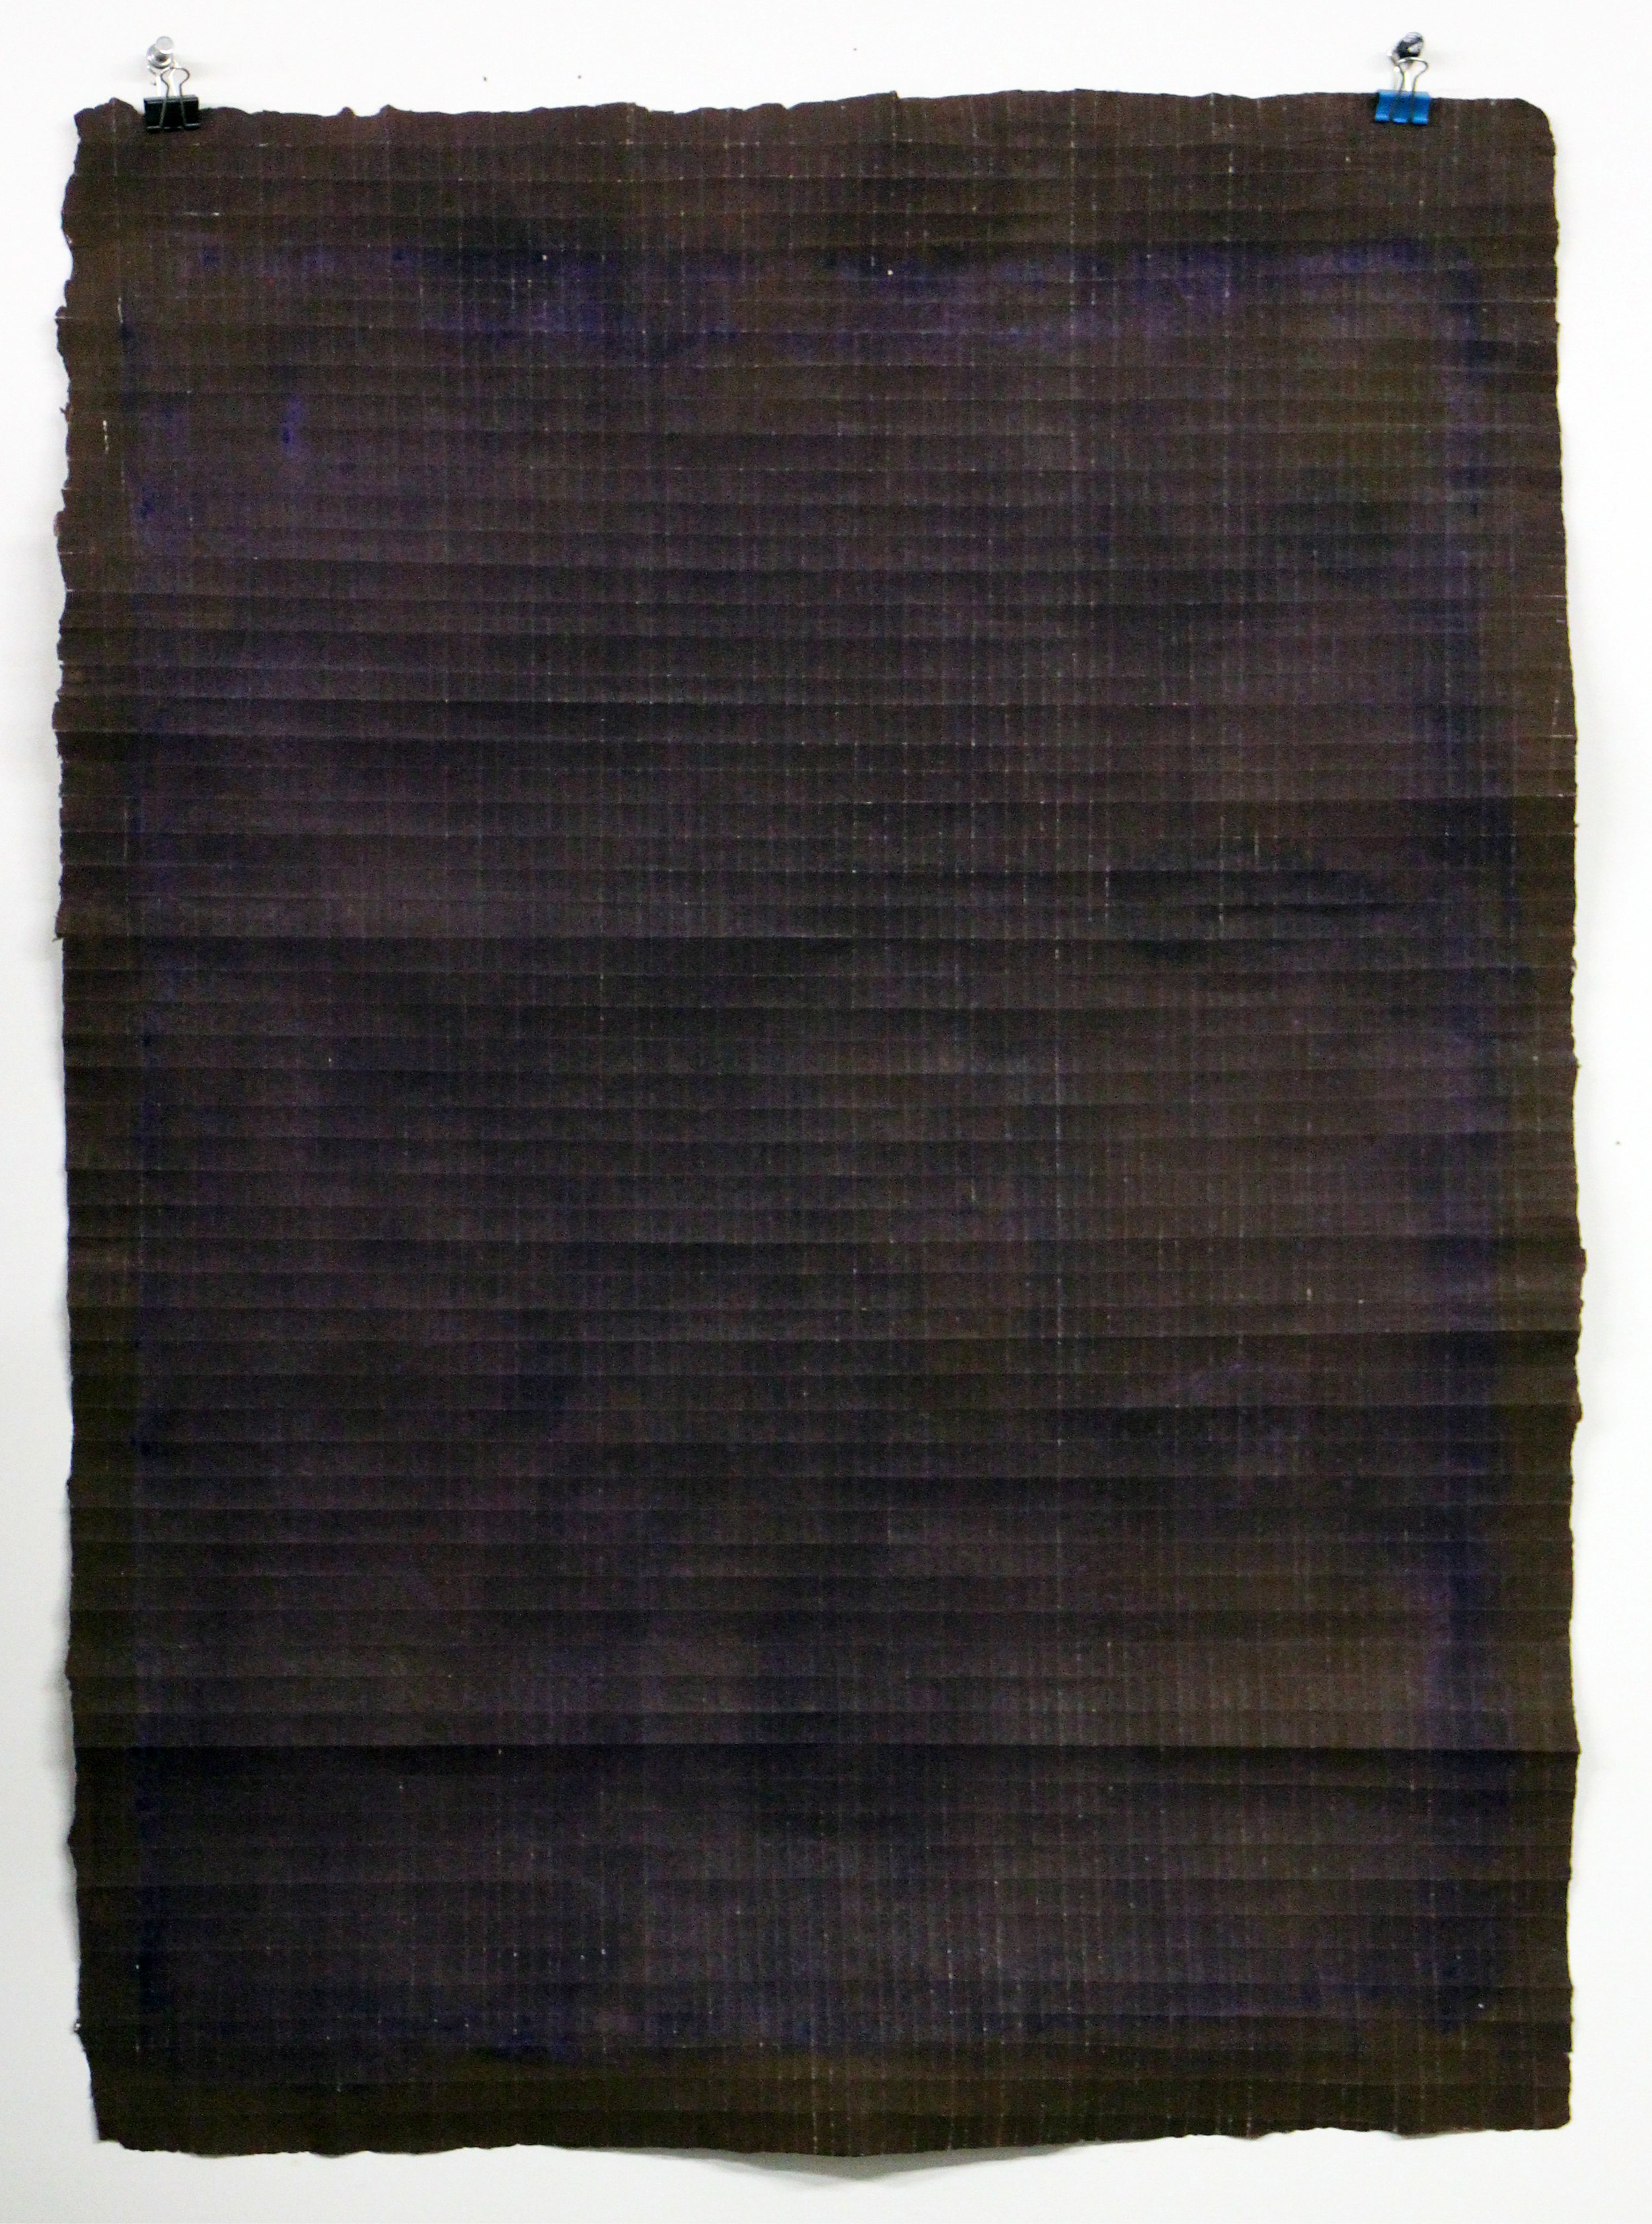 Brown Violet Fold 1.27.17